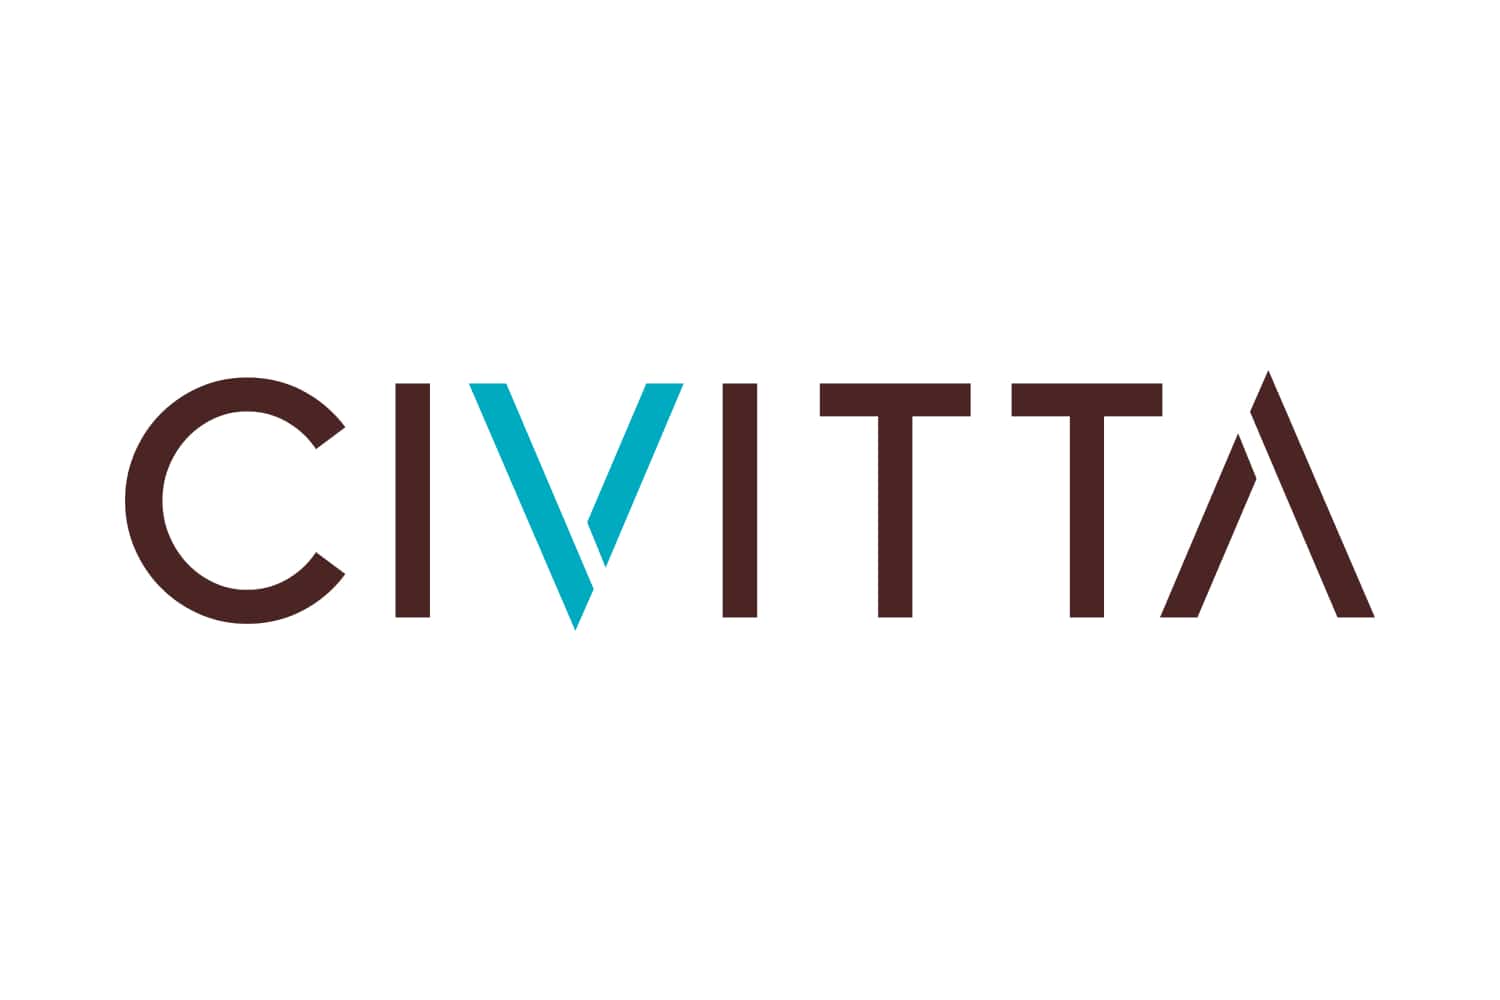 Civitta logo